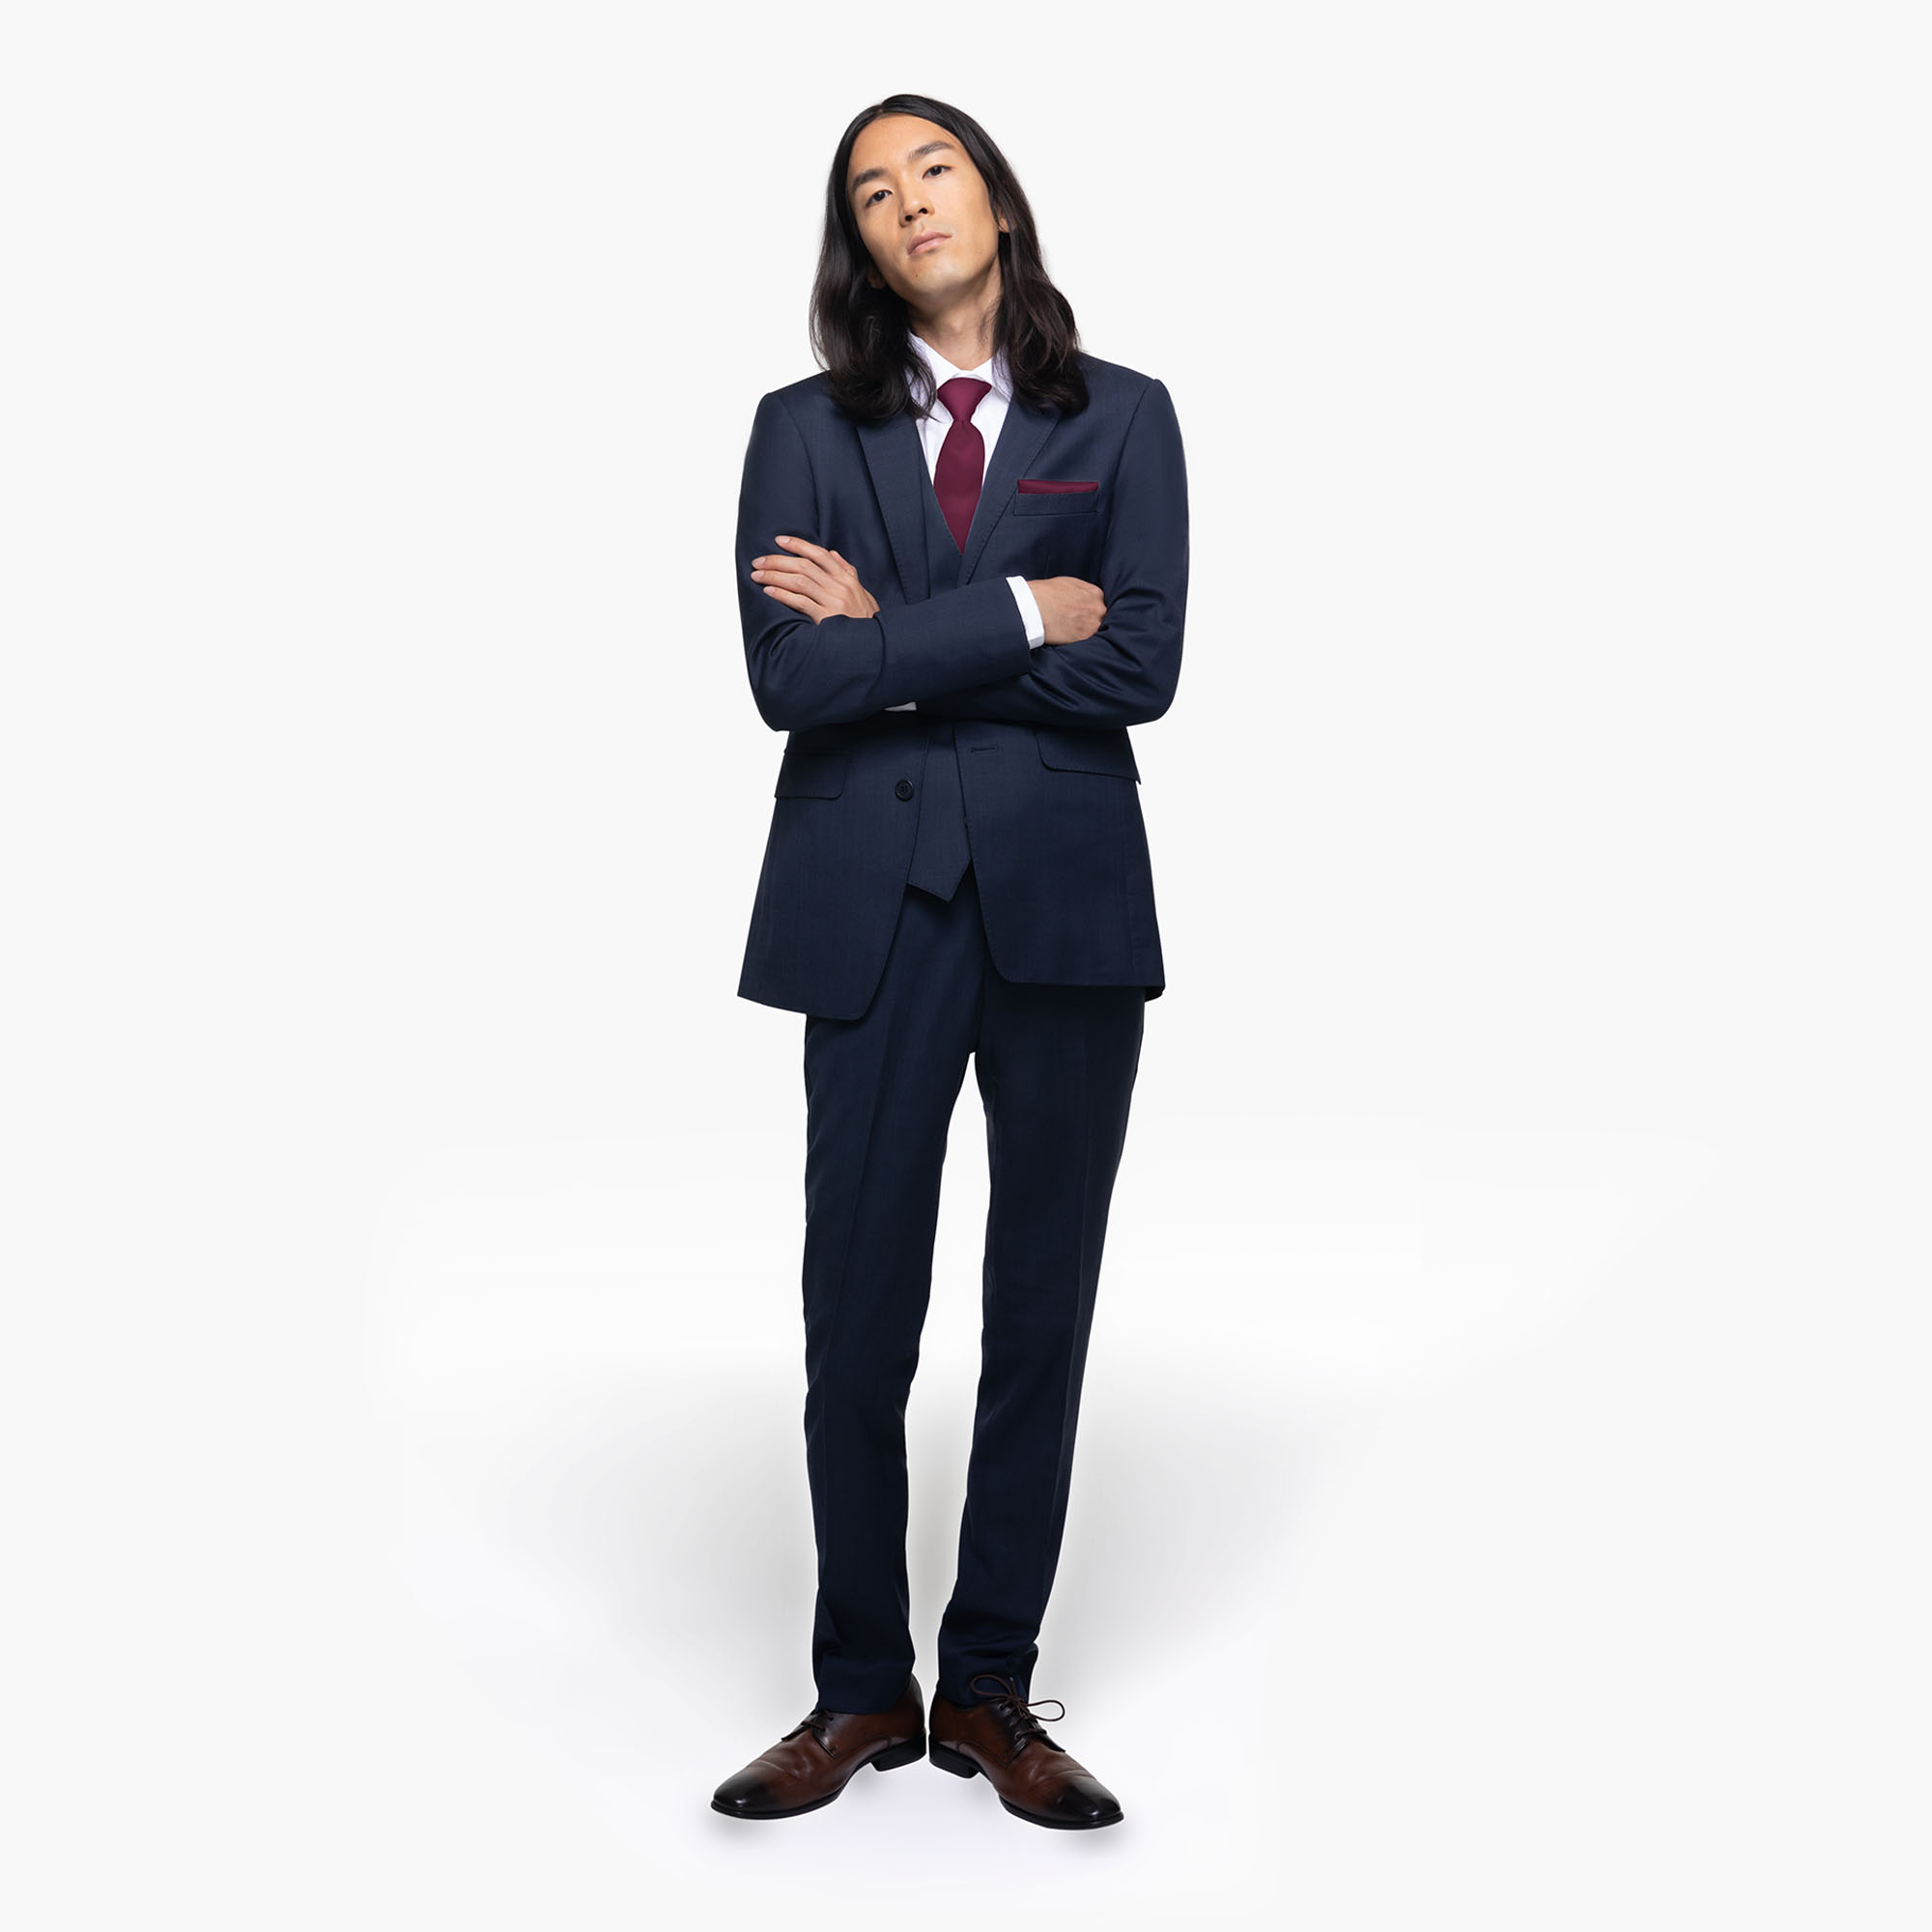 Suits for Men - Buy Men Suit & Blazer Online | Myntra